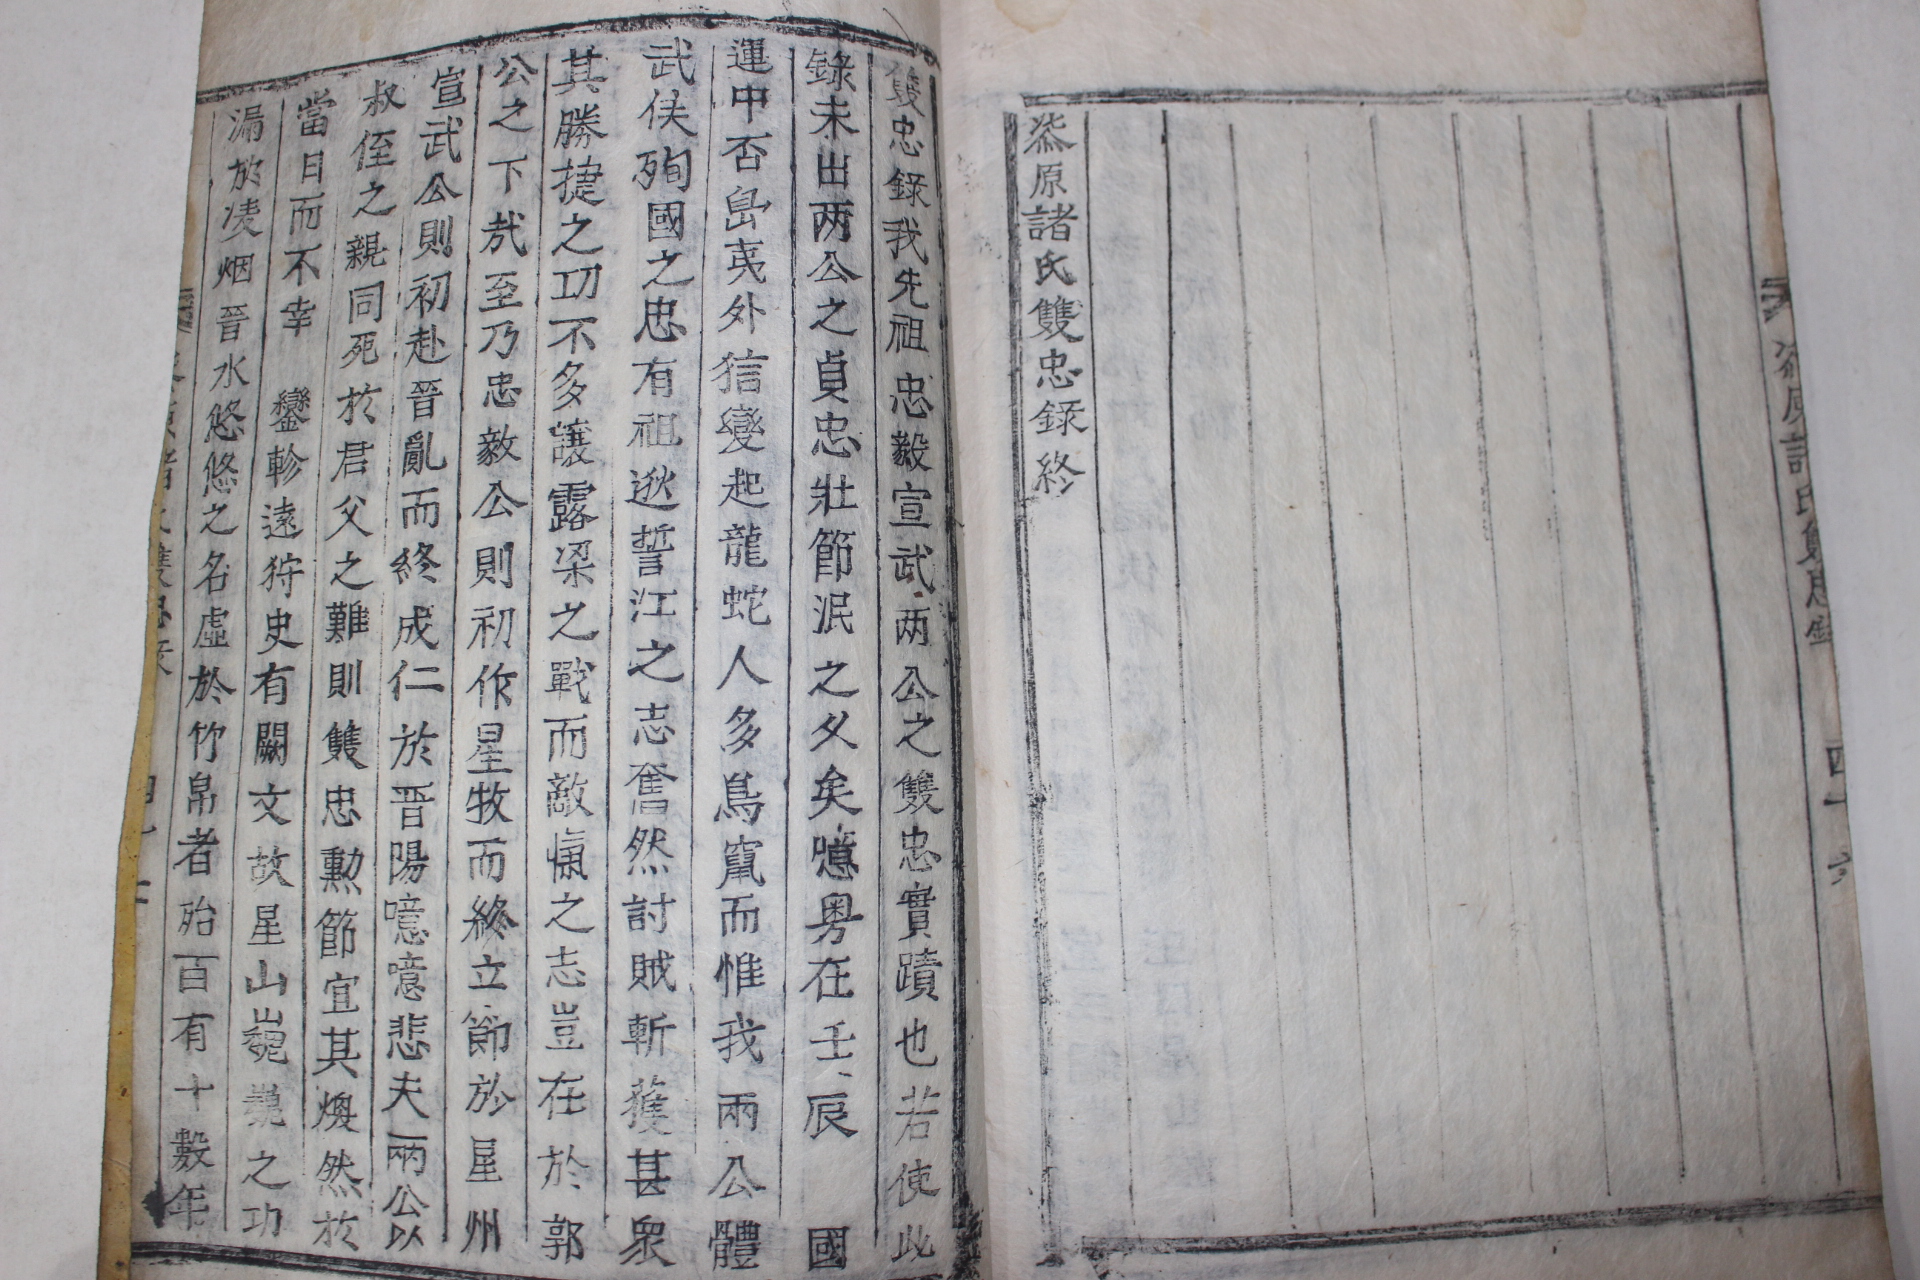 1860년 목활자본 칠원제씨쌍충록(漆原諸氏雙忠錄) 1책완질